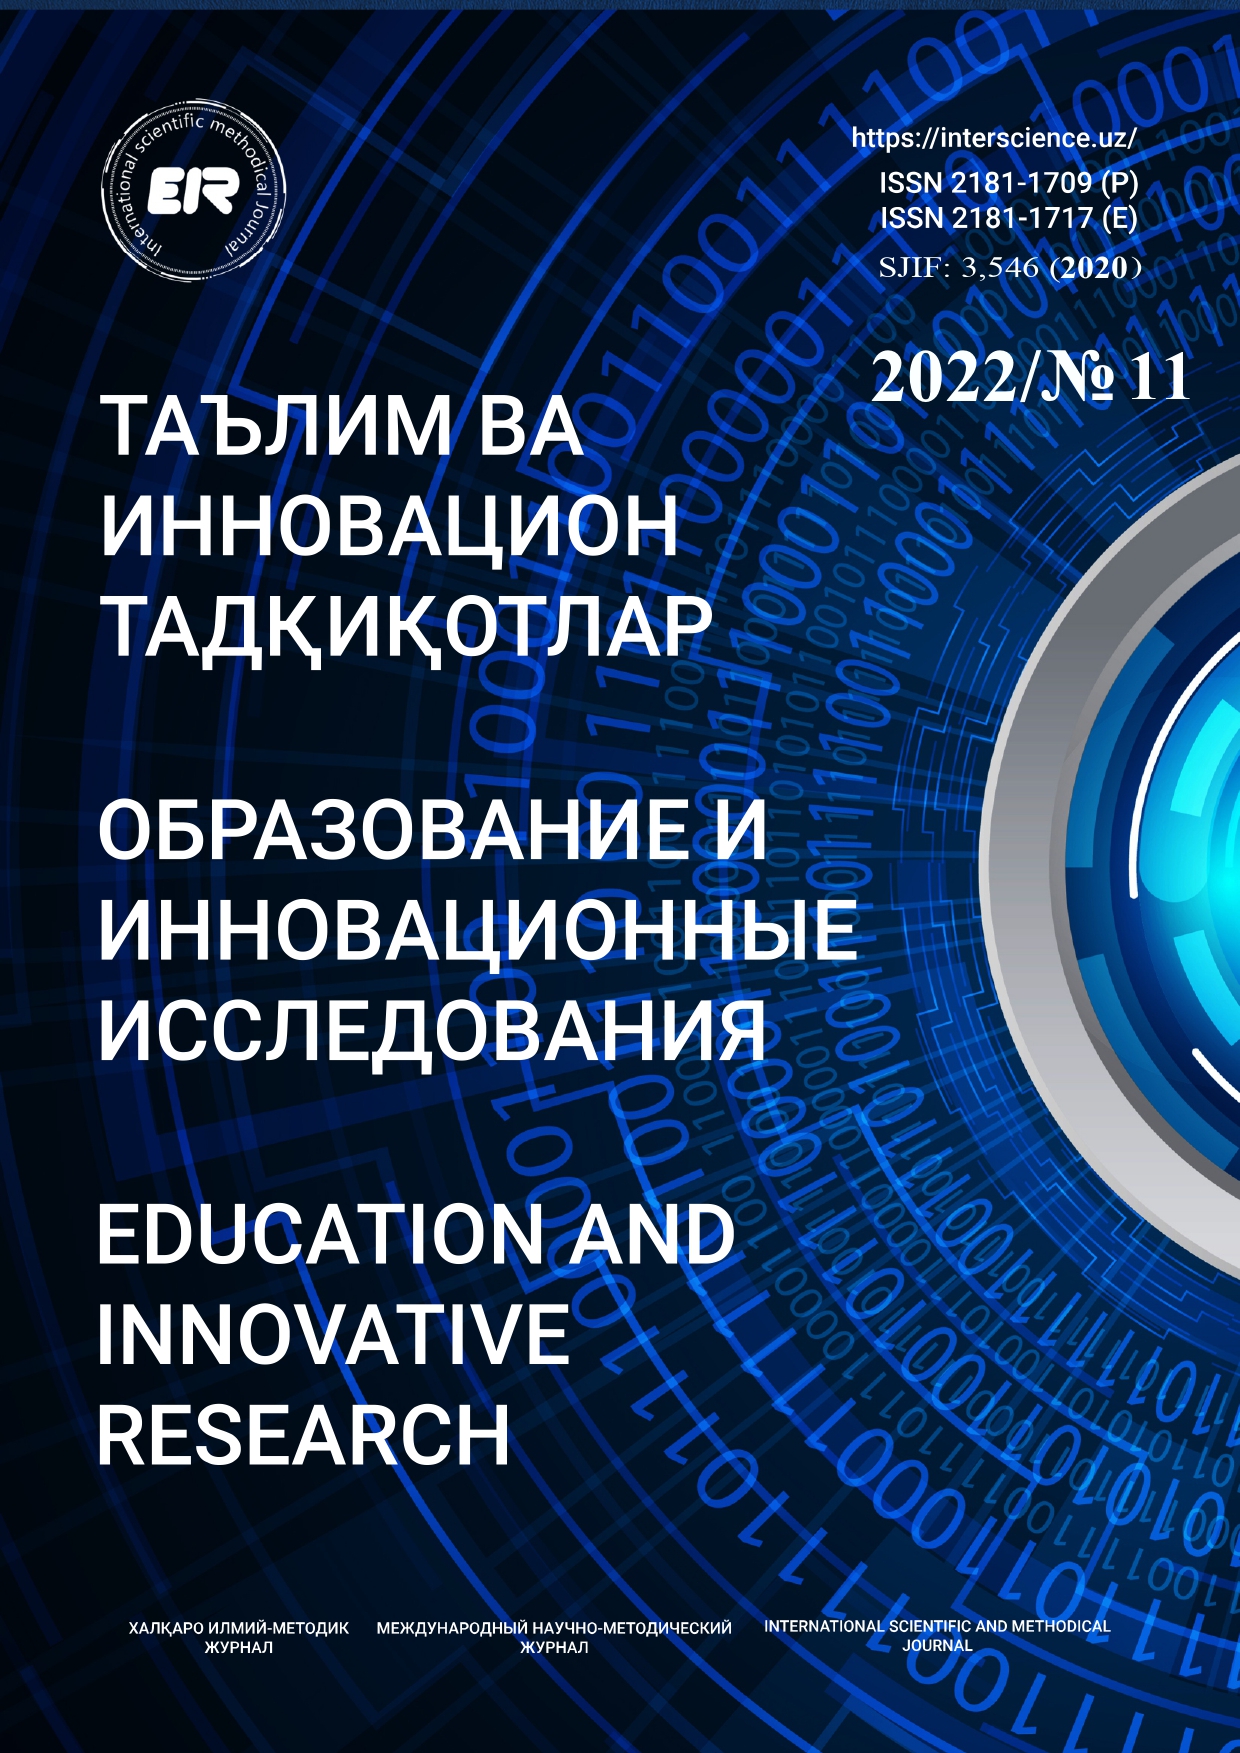 					Показать № 11 (2022): Образование и инновационные исследования
				